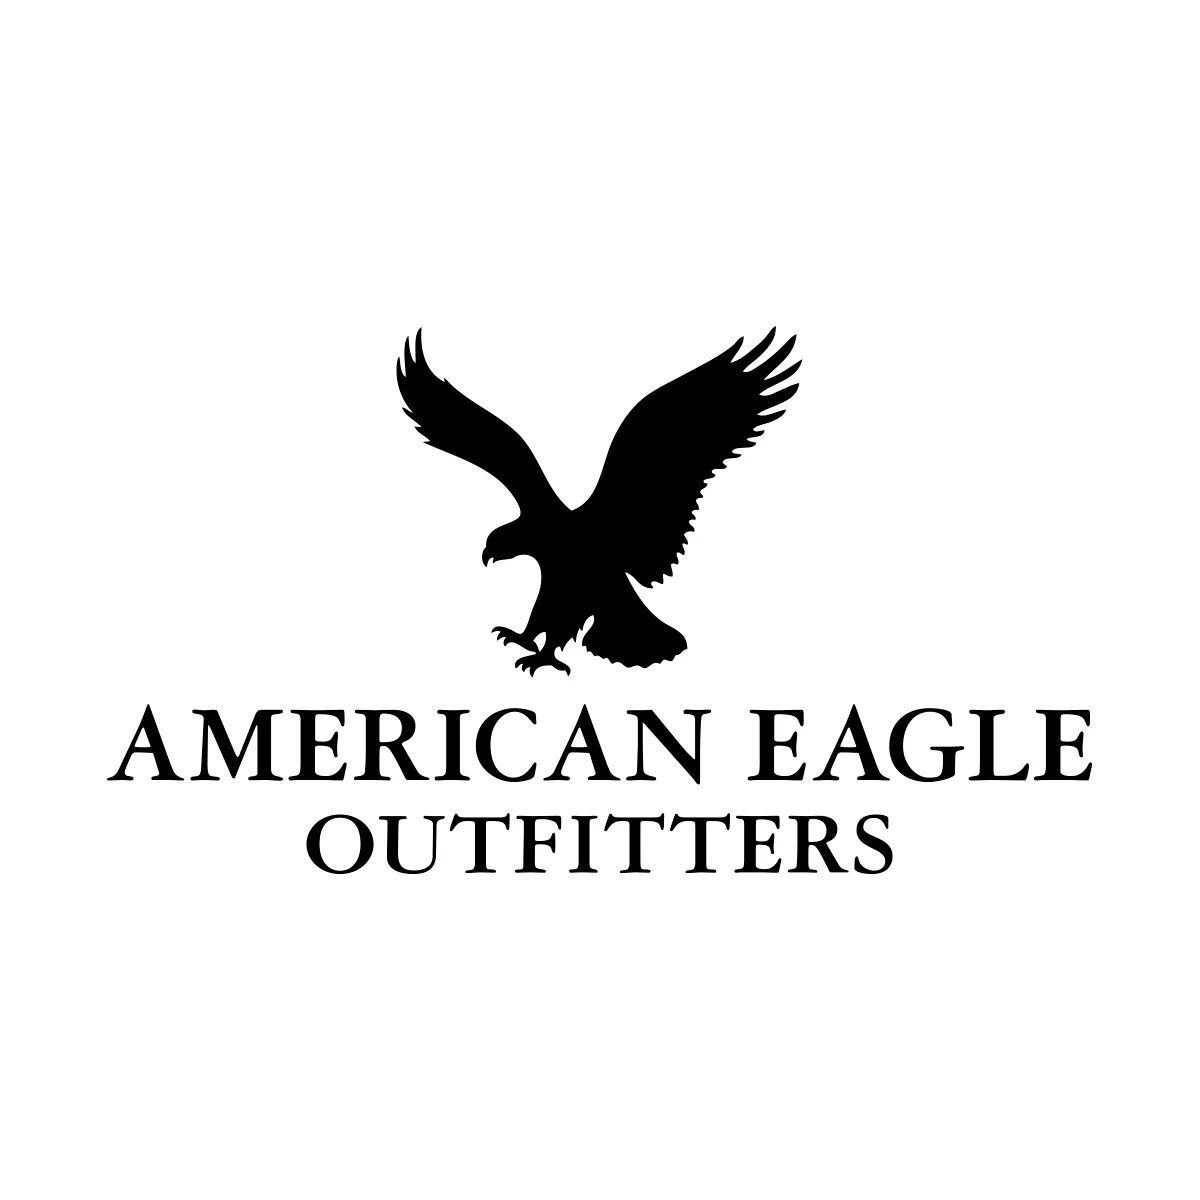 Американ игл. Фирма одежды с птицей. Марка одежды с логотипом птицы. Бренд одежды с птицей на логотипе. Бренд с орлом.